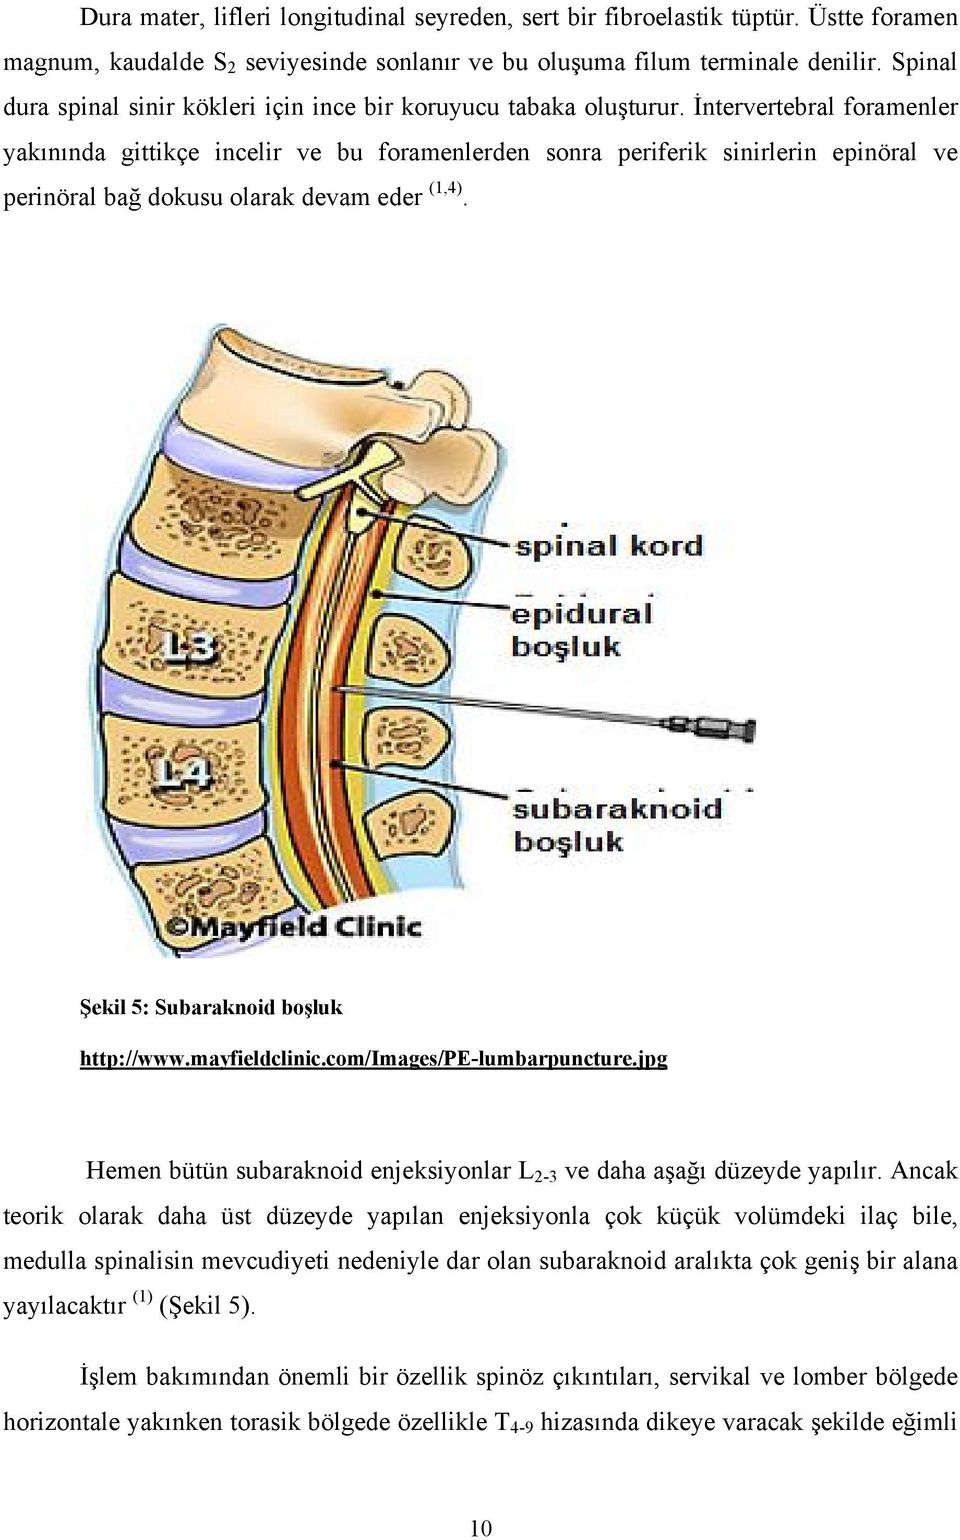 İntervertebral foramenler yakınında gittikçe incelir ve bu foramenlerden sonra periferik sinirlerin epinöral ve perinöral bağ dokusu olarak devam eder (1,4). Şekil 5: Subaraknoid boşluk http://www.